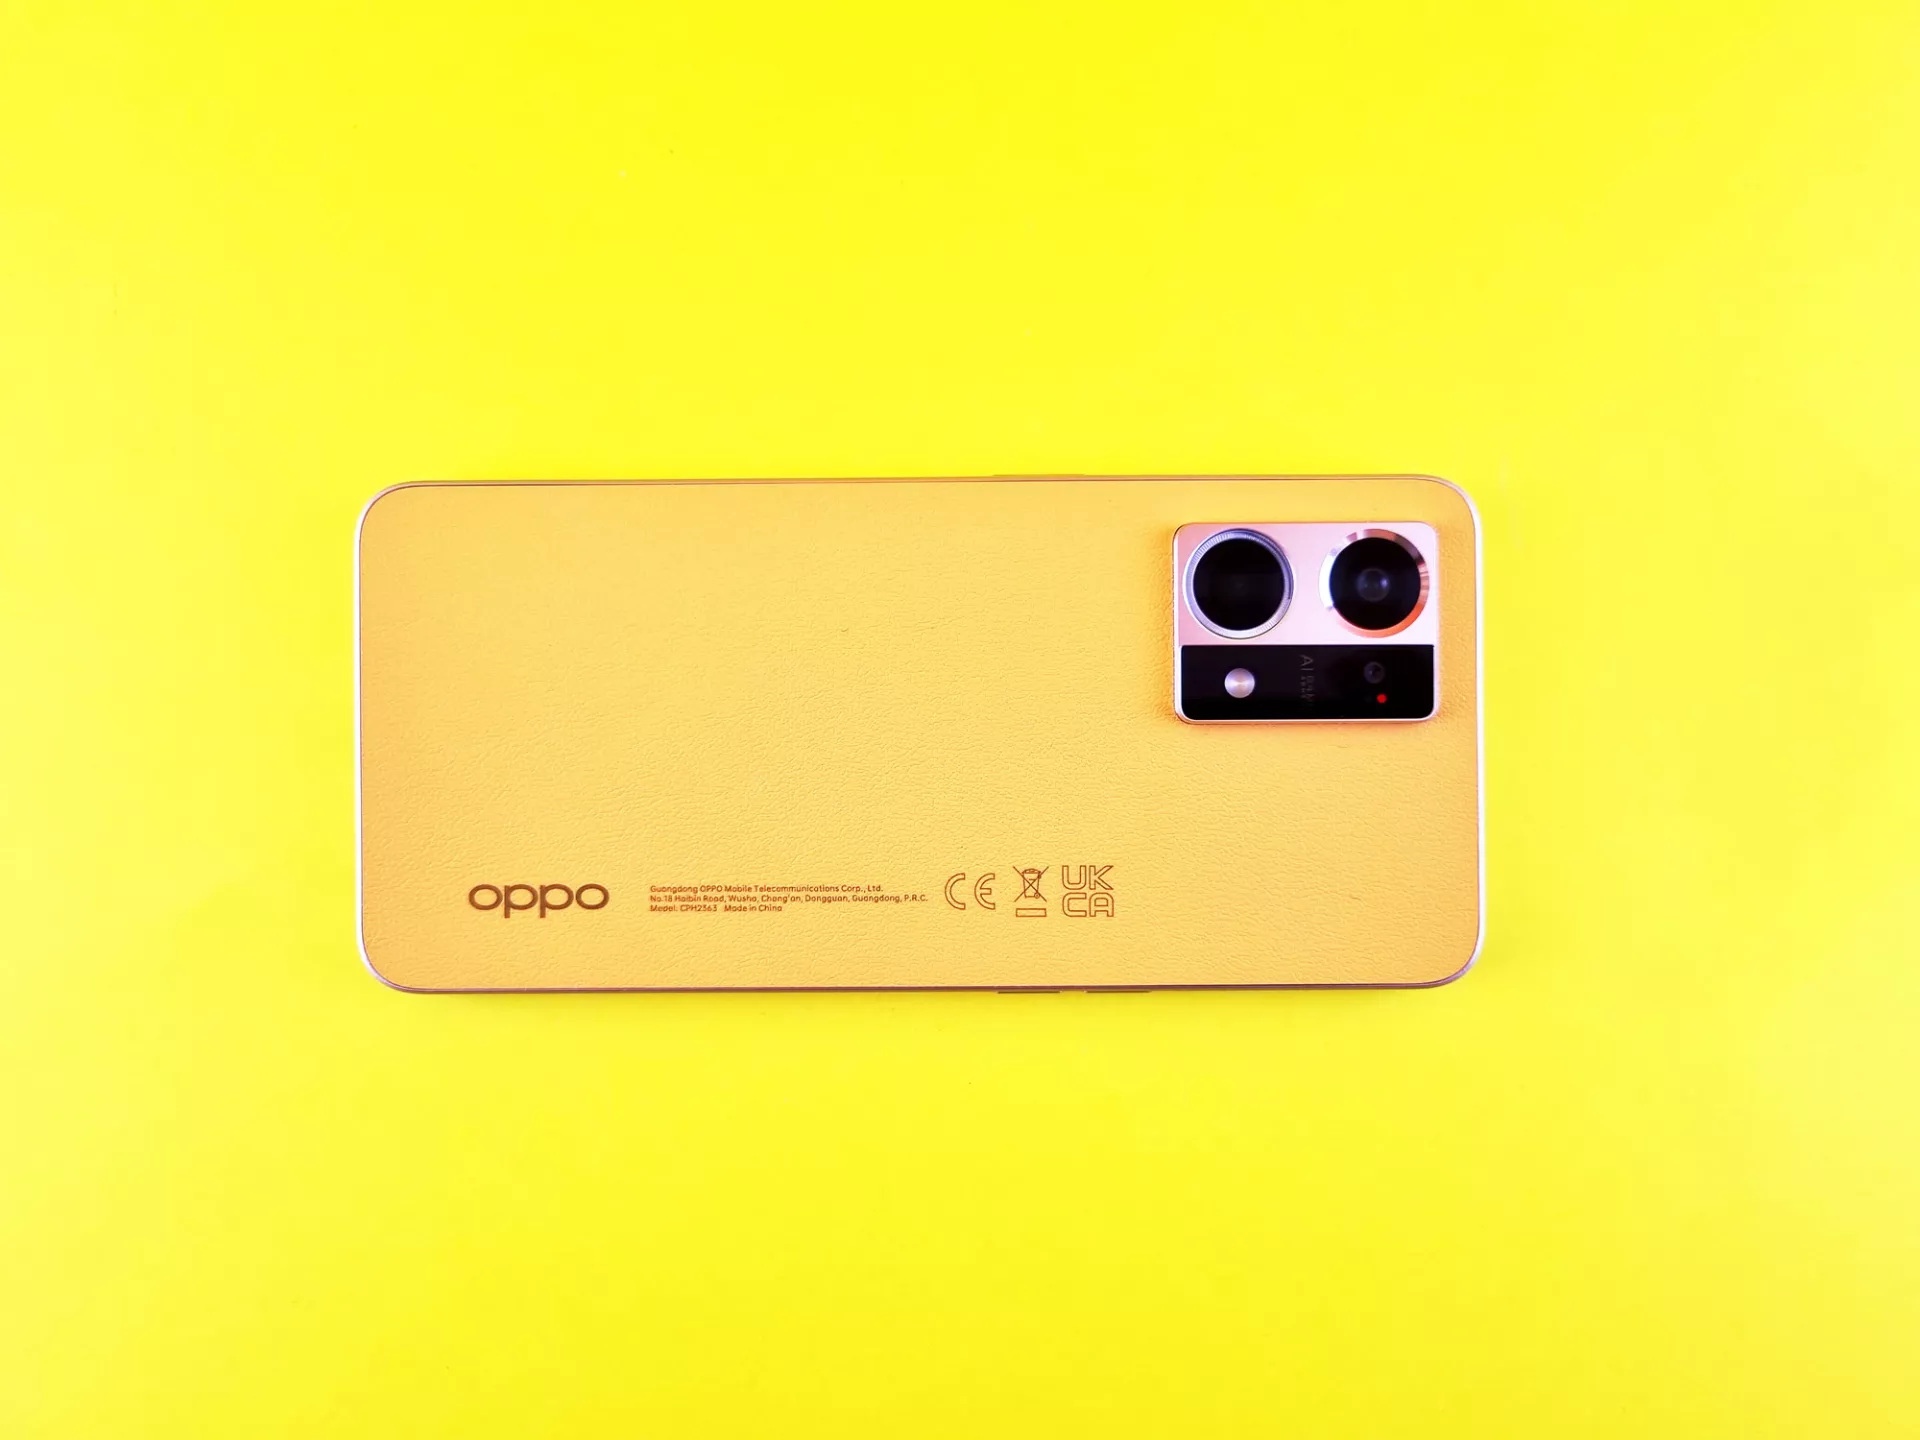 Тест-драйв и промокод на покупку смартфона OPPO Reno7